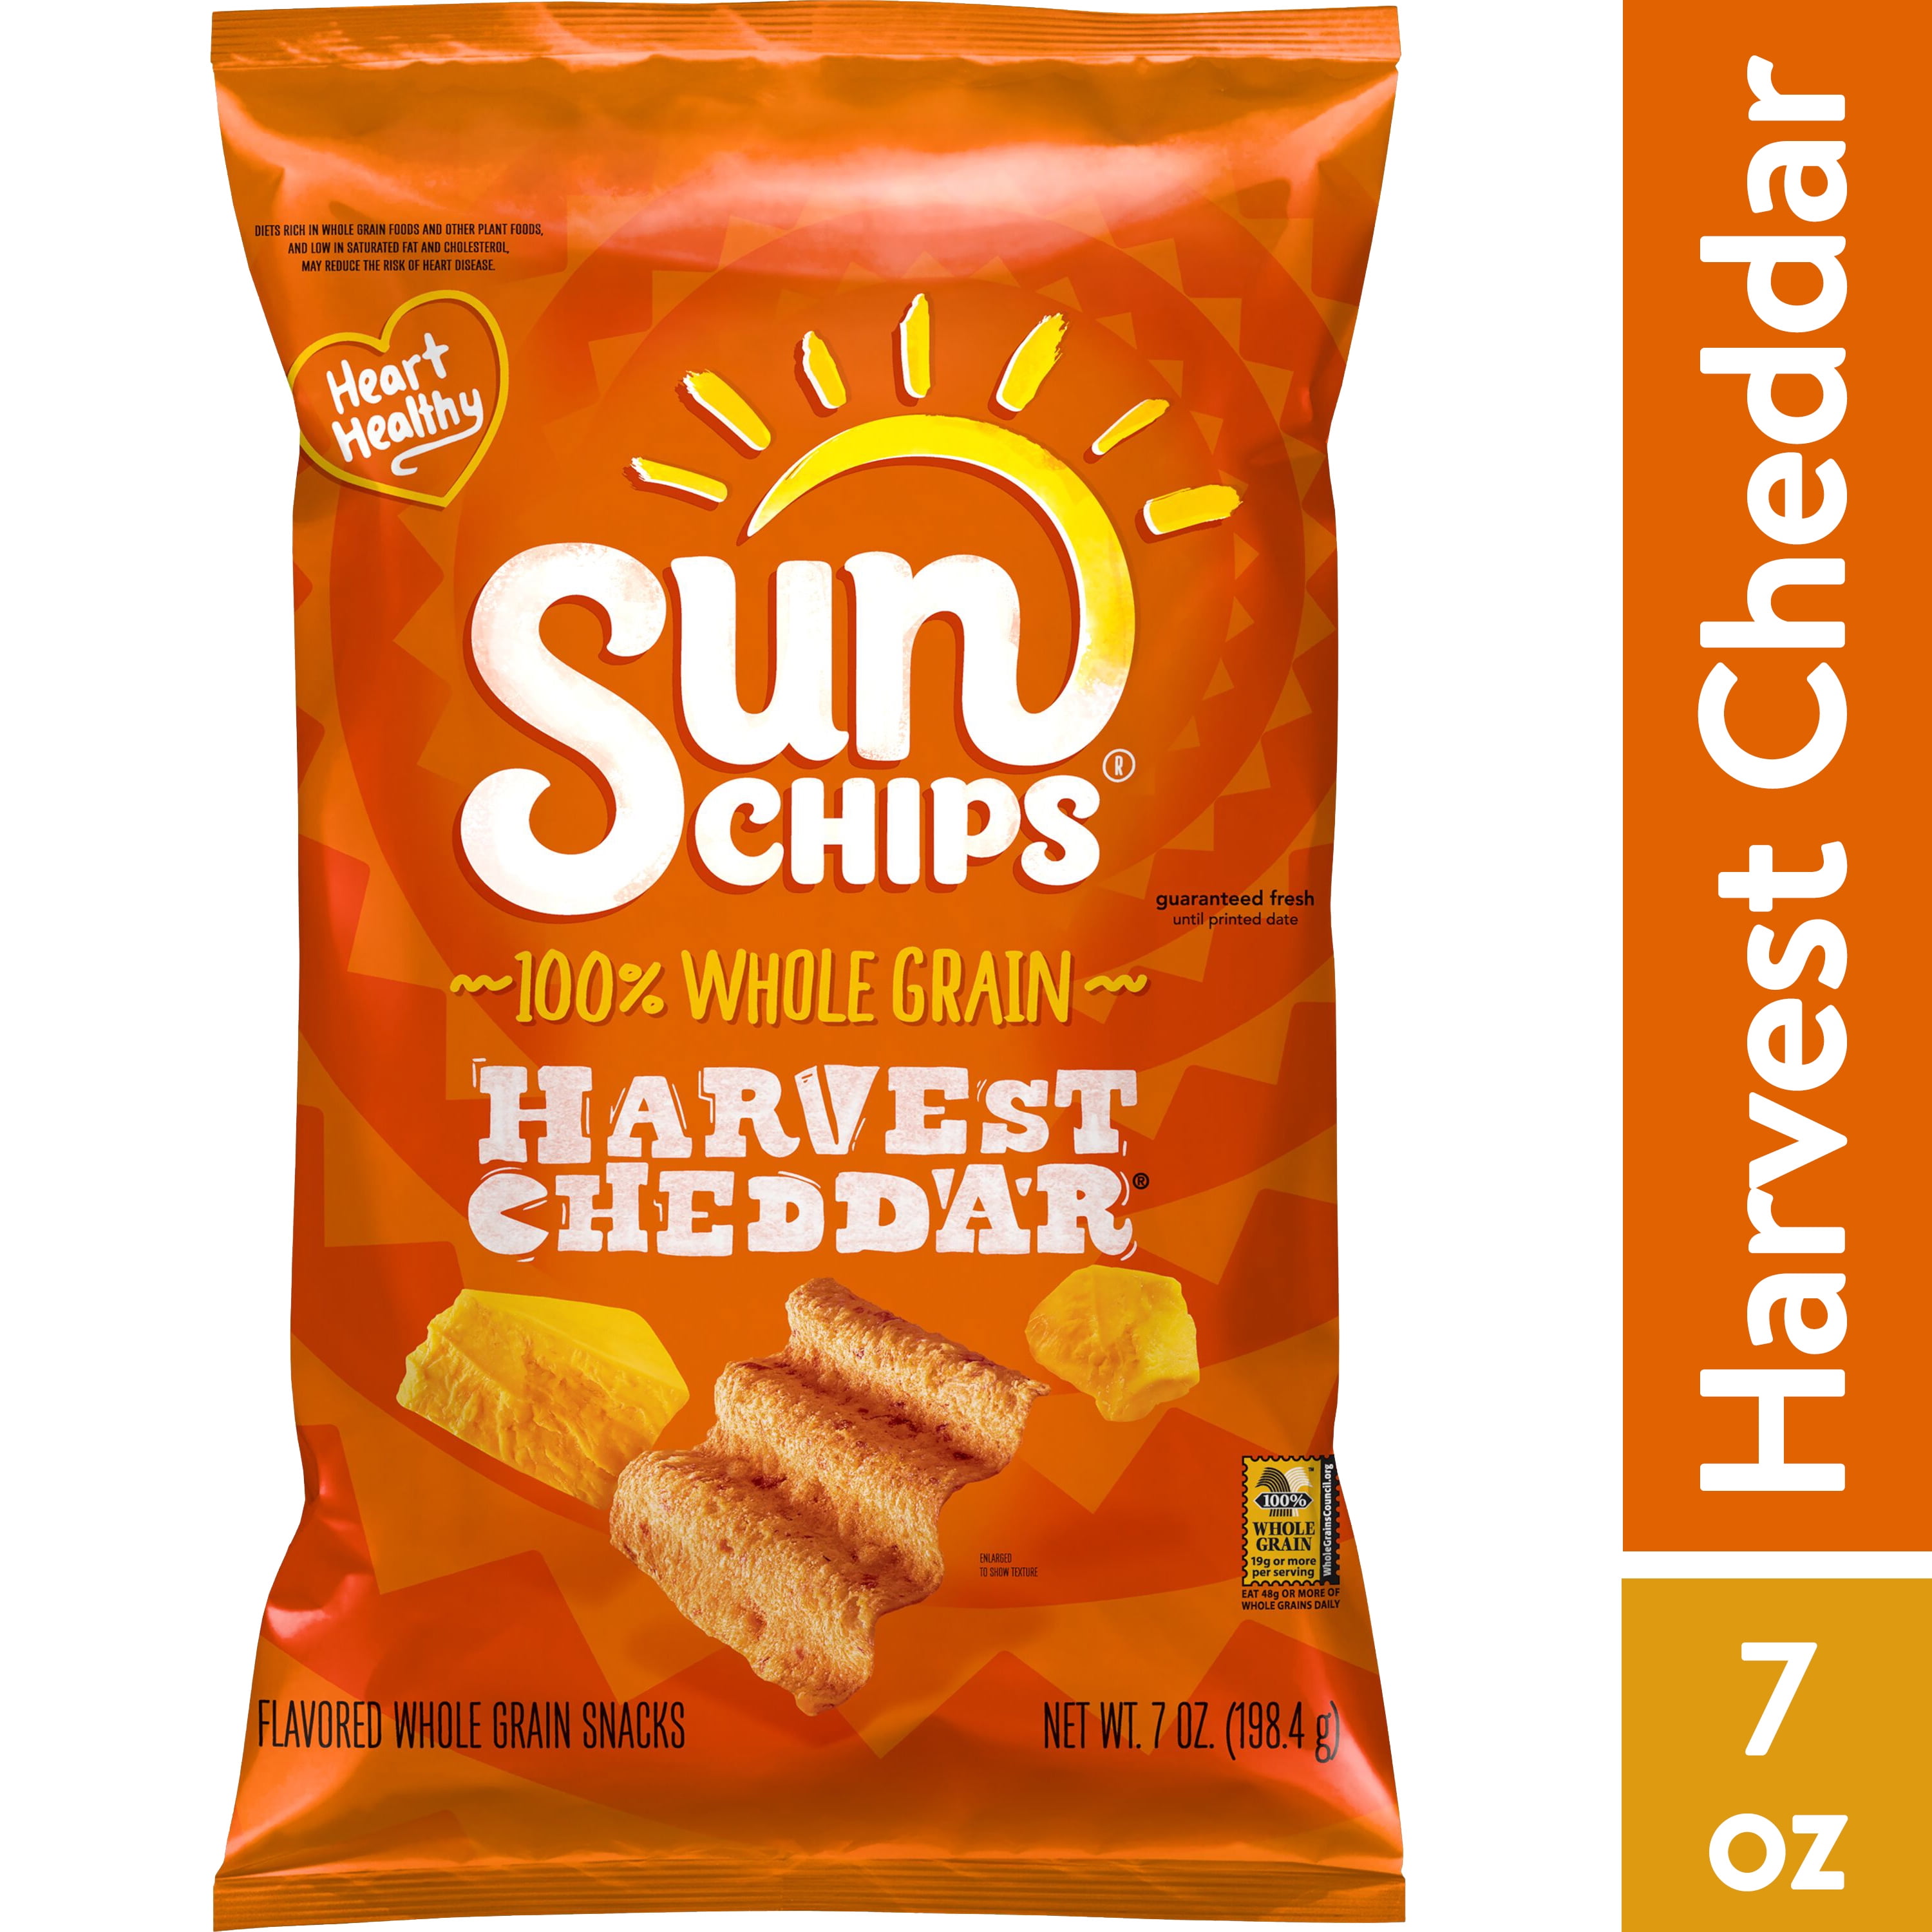 SunChips Harvest Cheddar Flavored Whole Grain Snacks, 7 oz. Bag